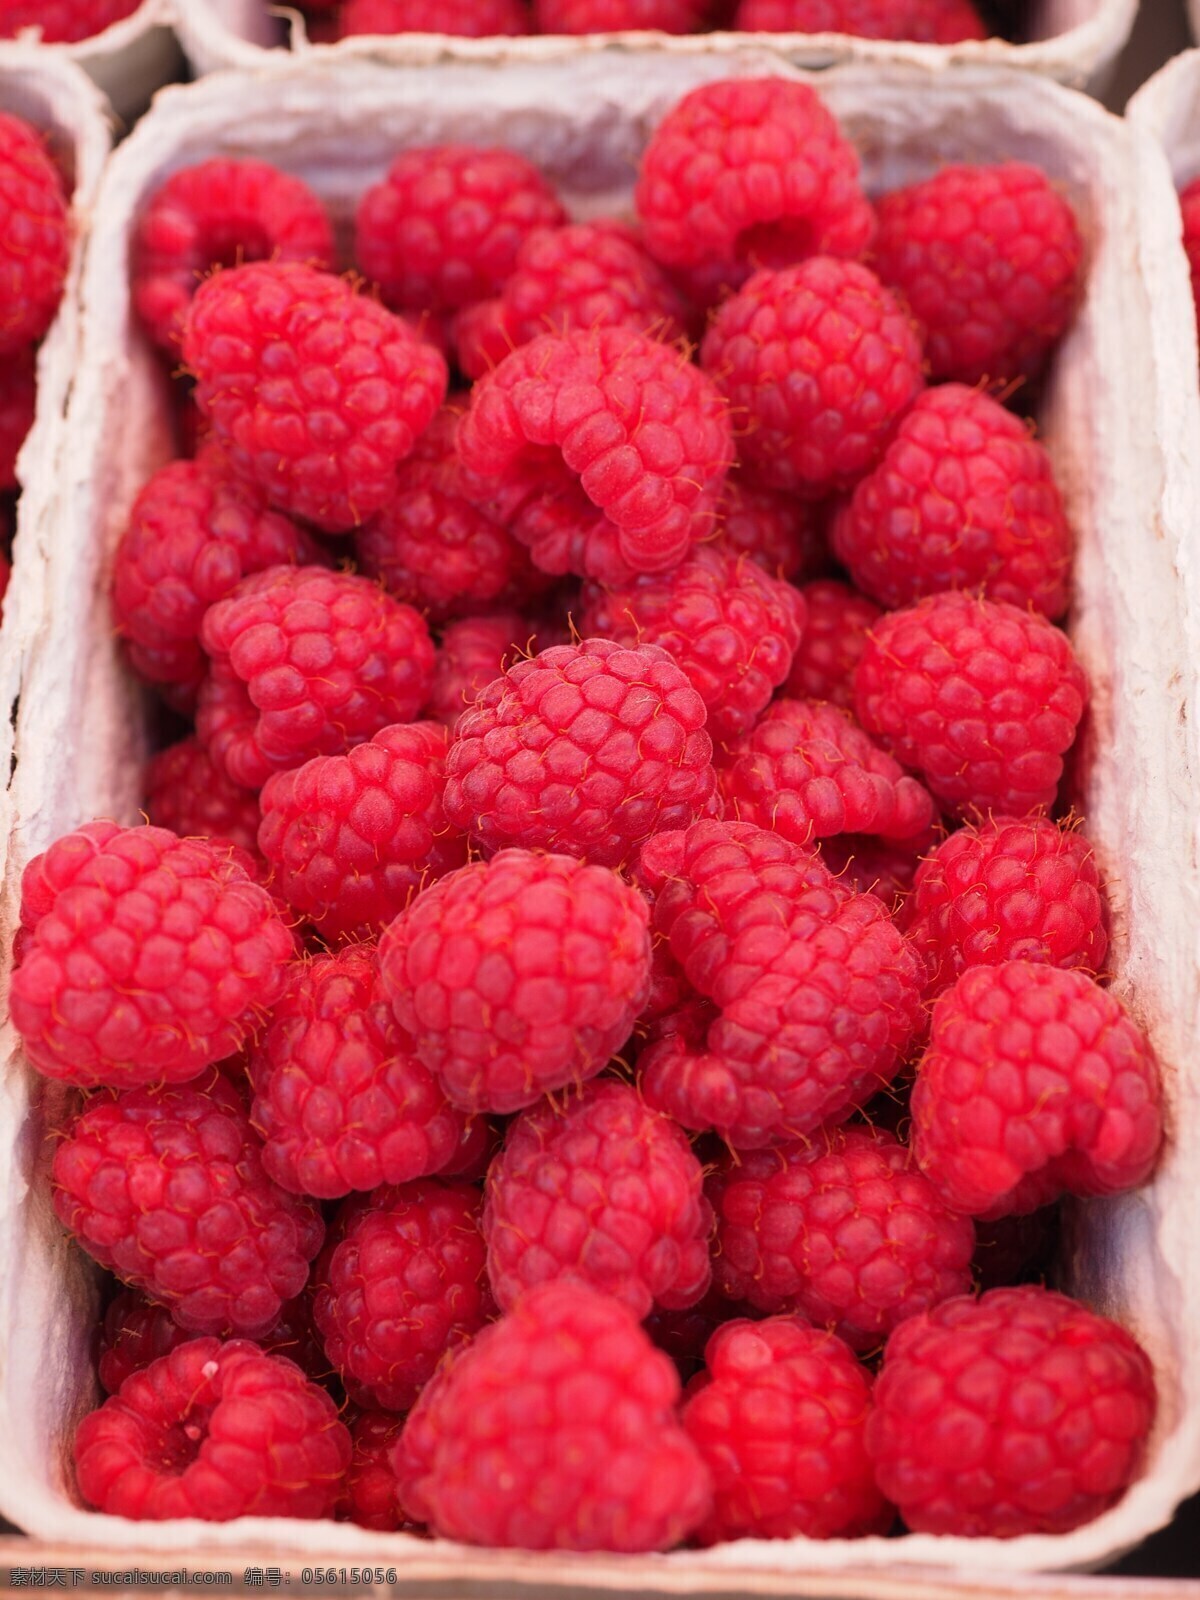 维生素浆果 山莓 浆果 水果 红色 维生素 甜 美味 健康